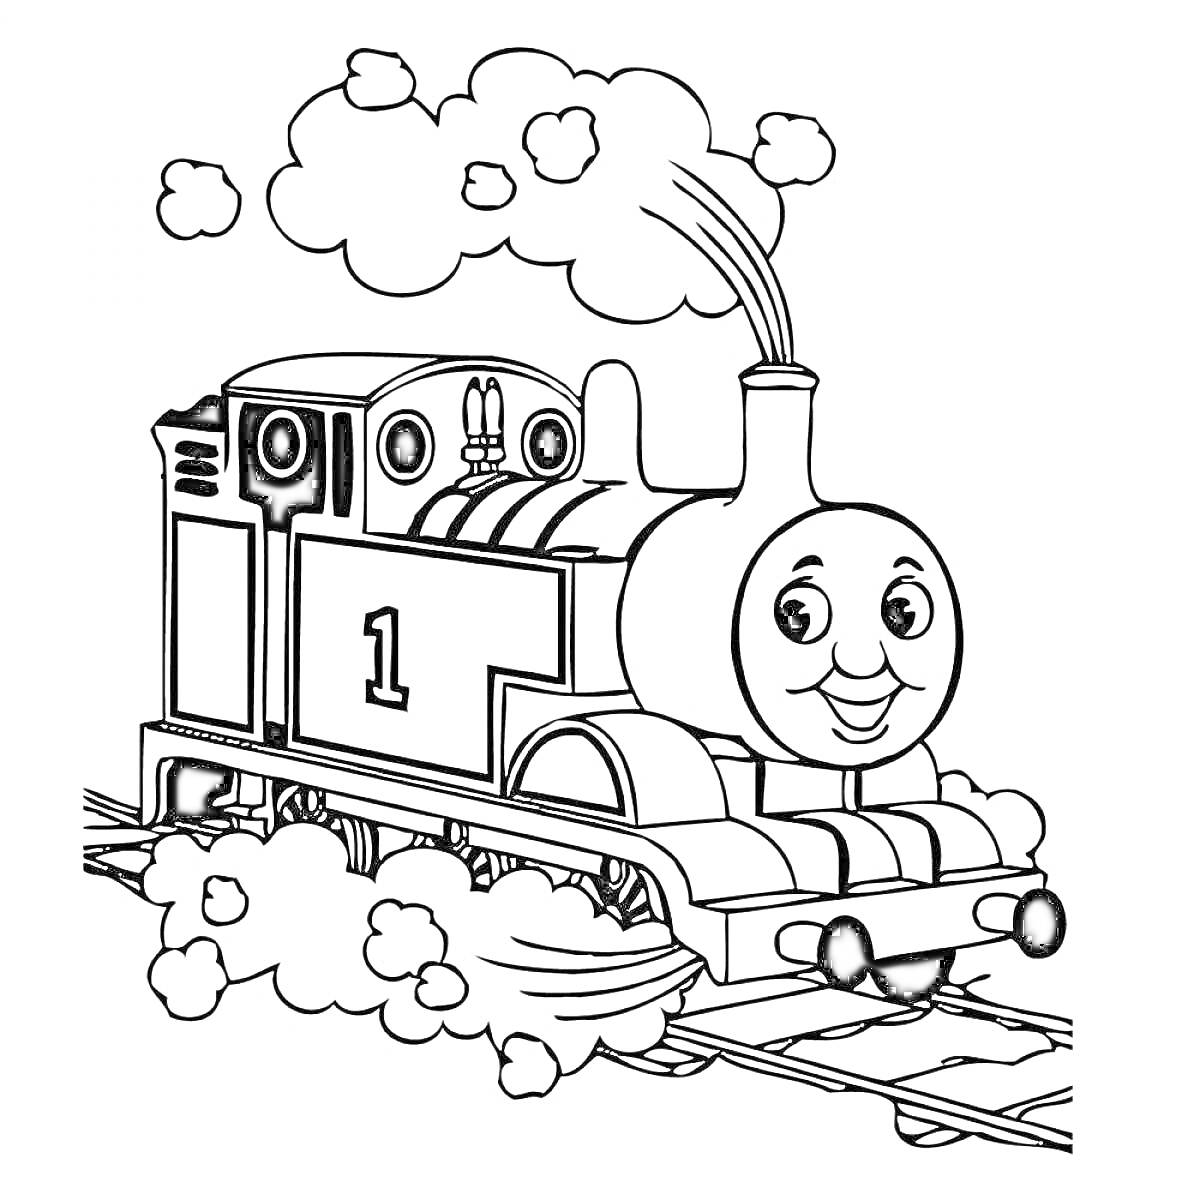 Раскраска Паровоз Томас с улыбающимся лицом на железнодорожных путях, пар.